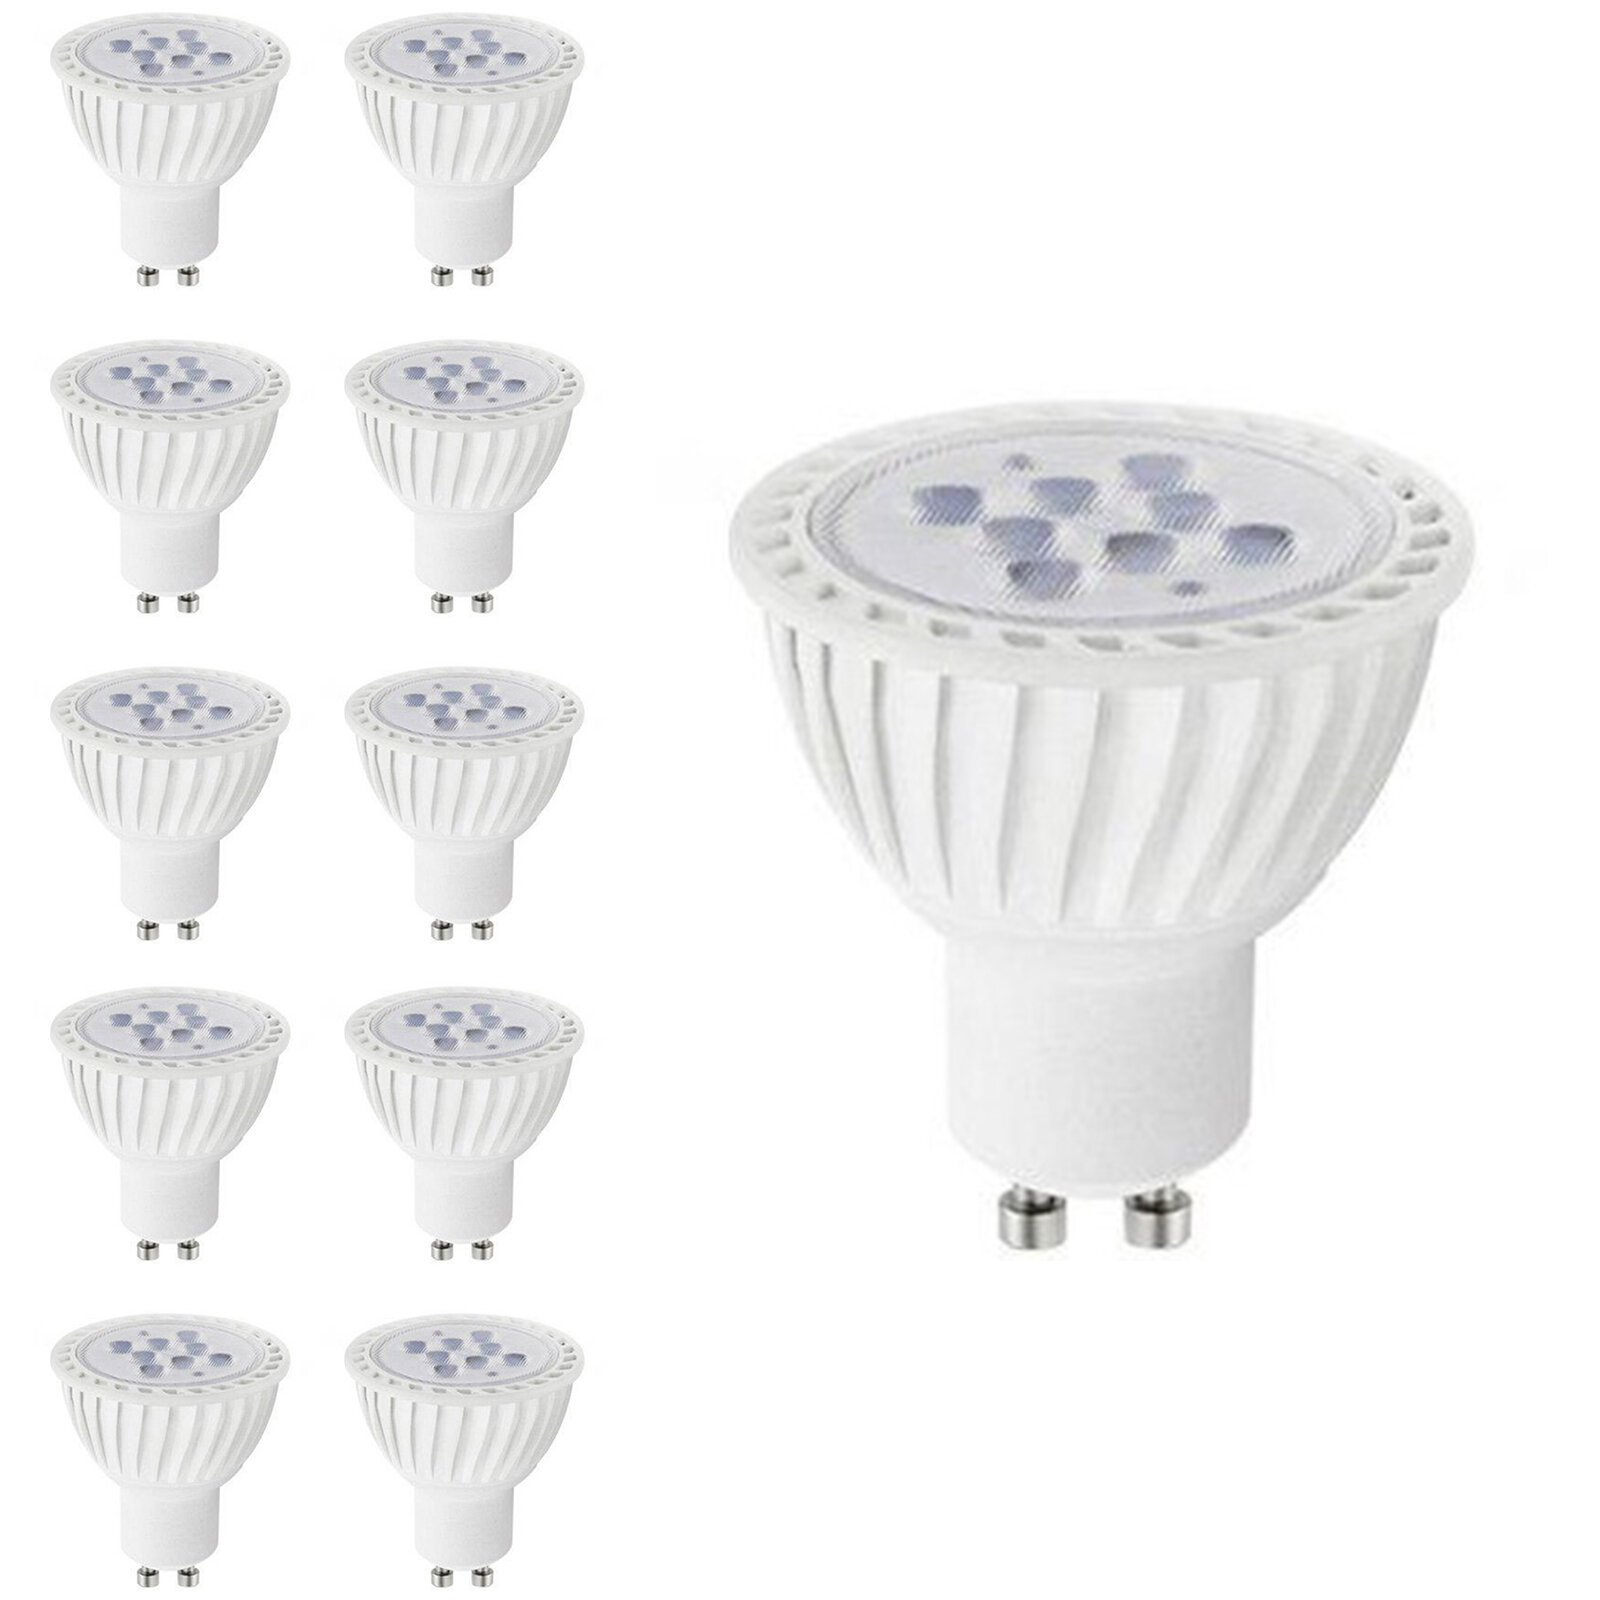 Orion Hot Sale JDR 5W LED Spot Light GU10 E14 E27 MR16 Base LED Light Bulb  GU10 - China JDR LED Light Bulb, E14 GU10 LED Lamp